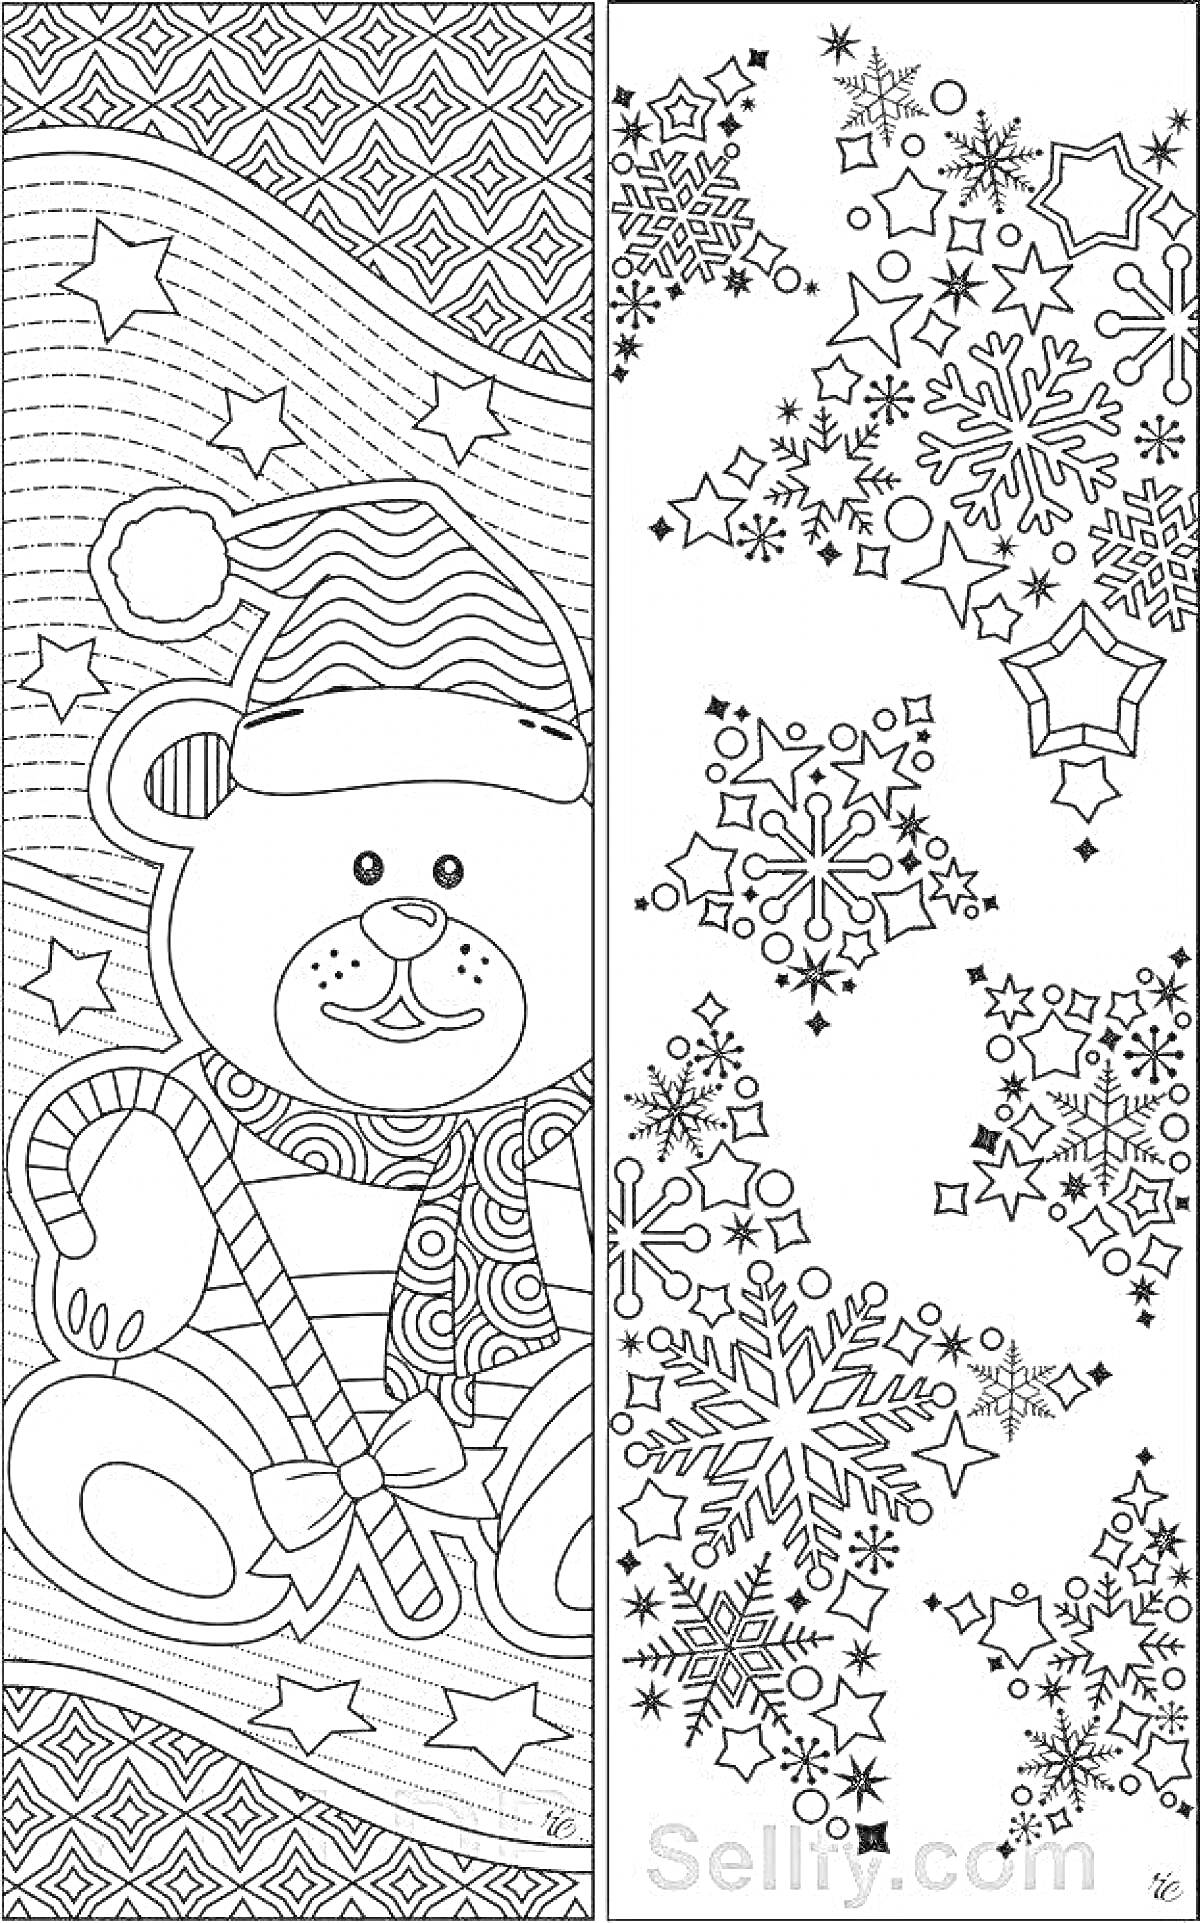 Раскраска Новогодняя закладка с медведем и леденцом в шапке Санты и закладка с узором из снежинок и звёздочек